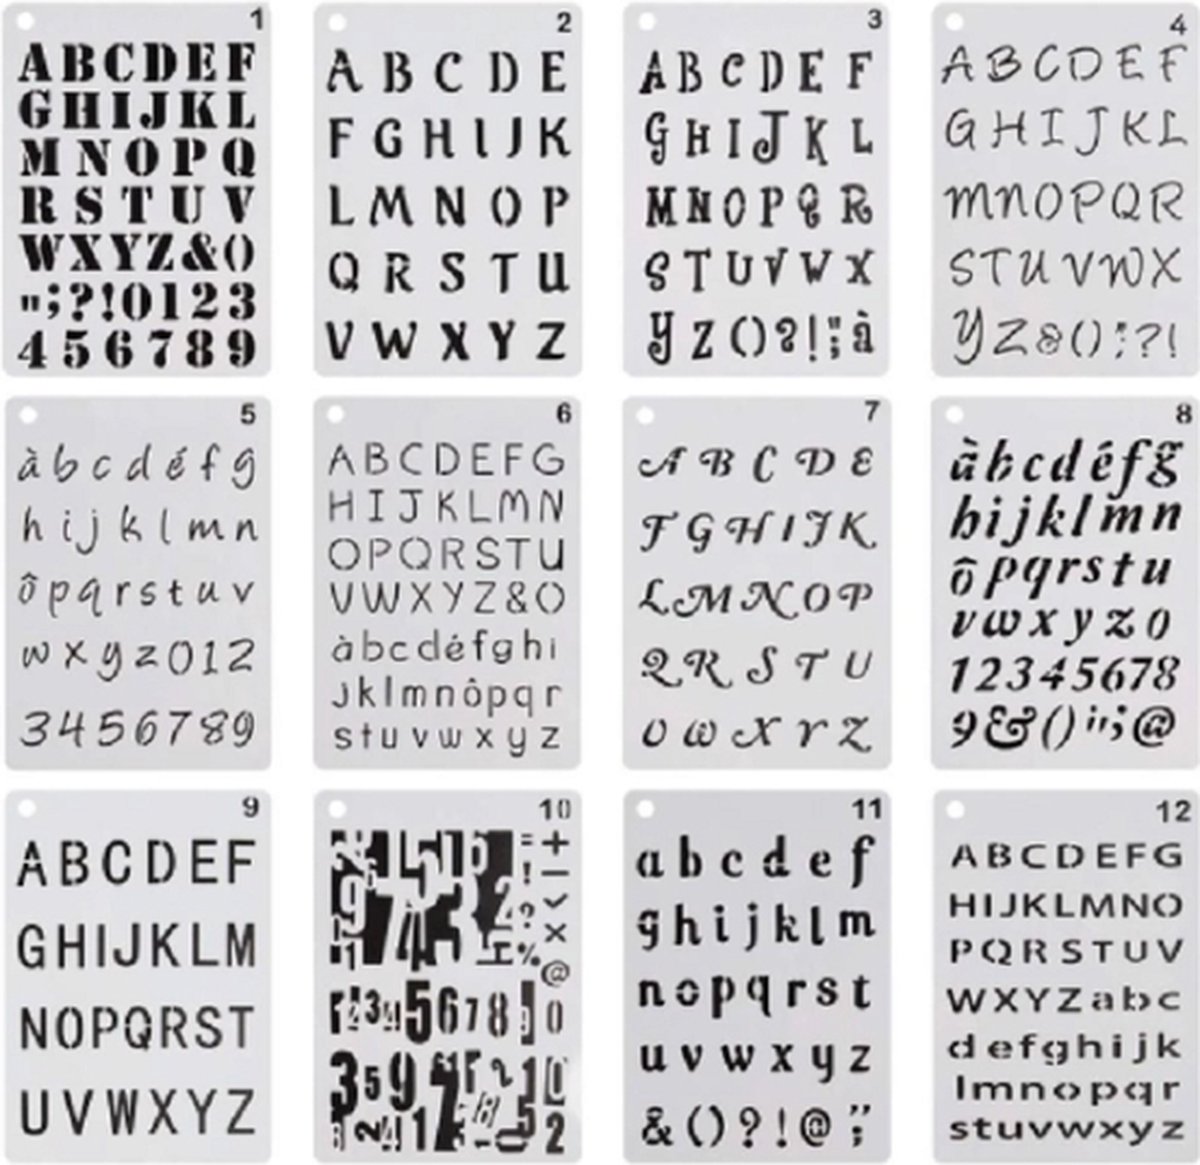 Lettersjablonen - Sjabloon met letters - Alfabet - ABC - Cijfers - Handlettering - Bullet Journaling - 20,3x12,8cm - 12 stuks